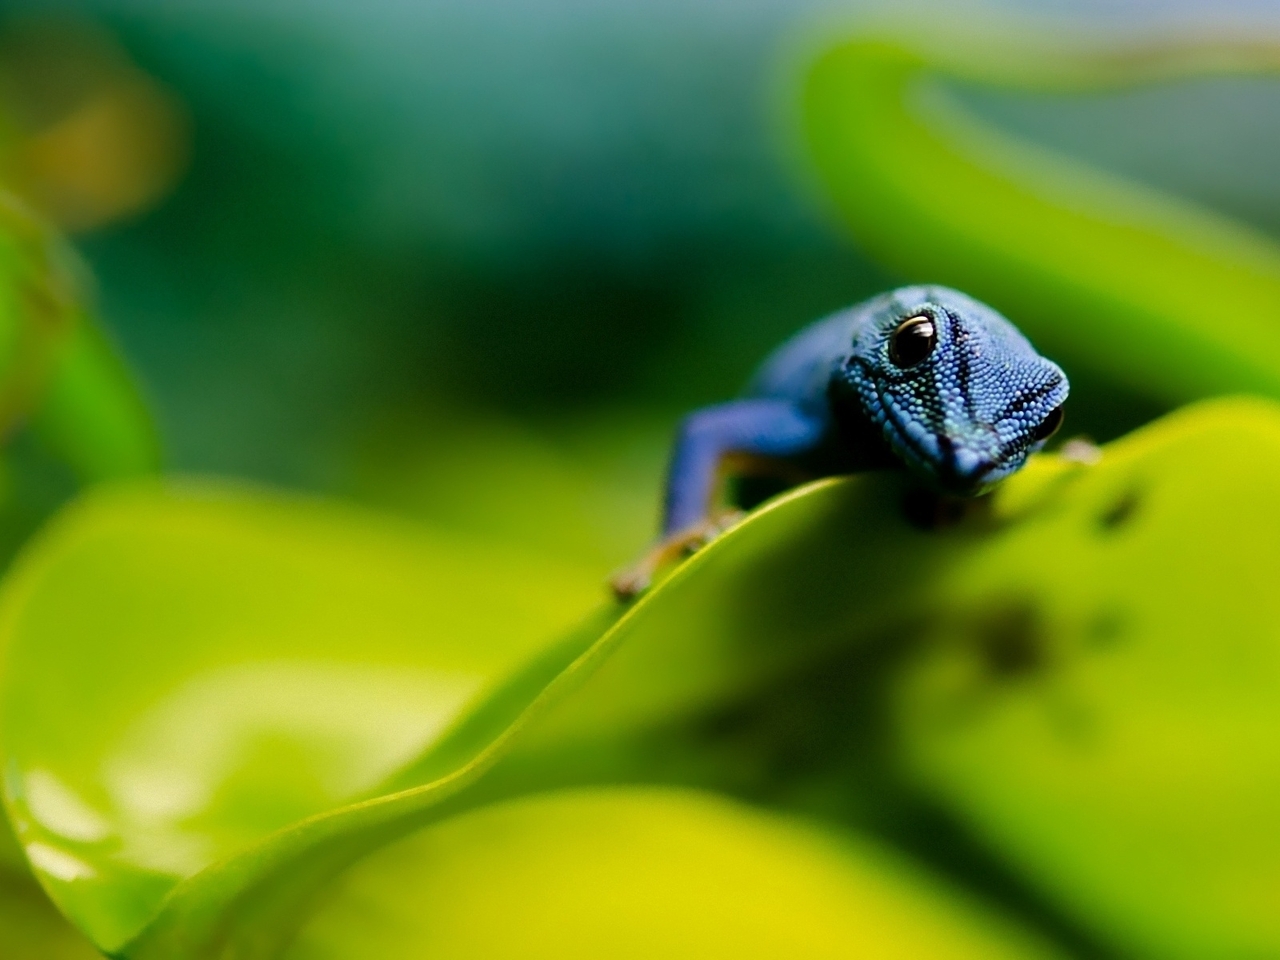 Image: Lizard, creepy, blue Gecko, leaves, looking